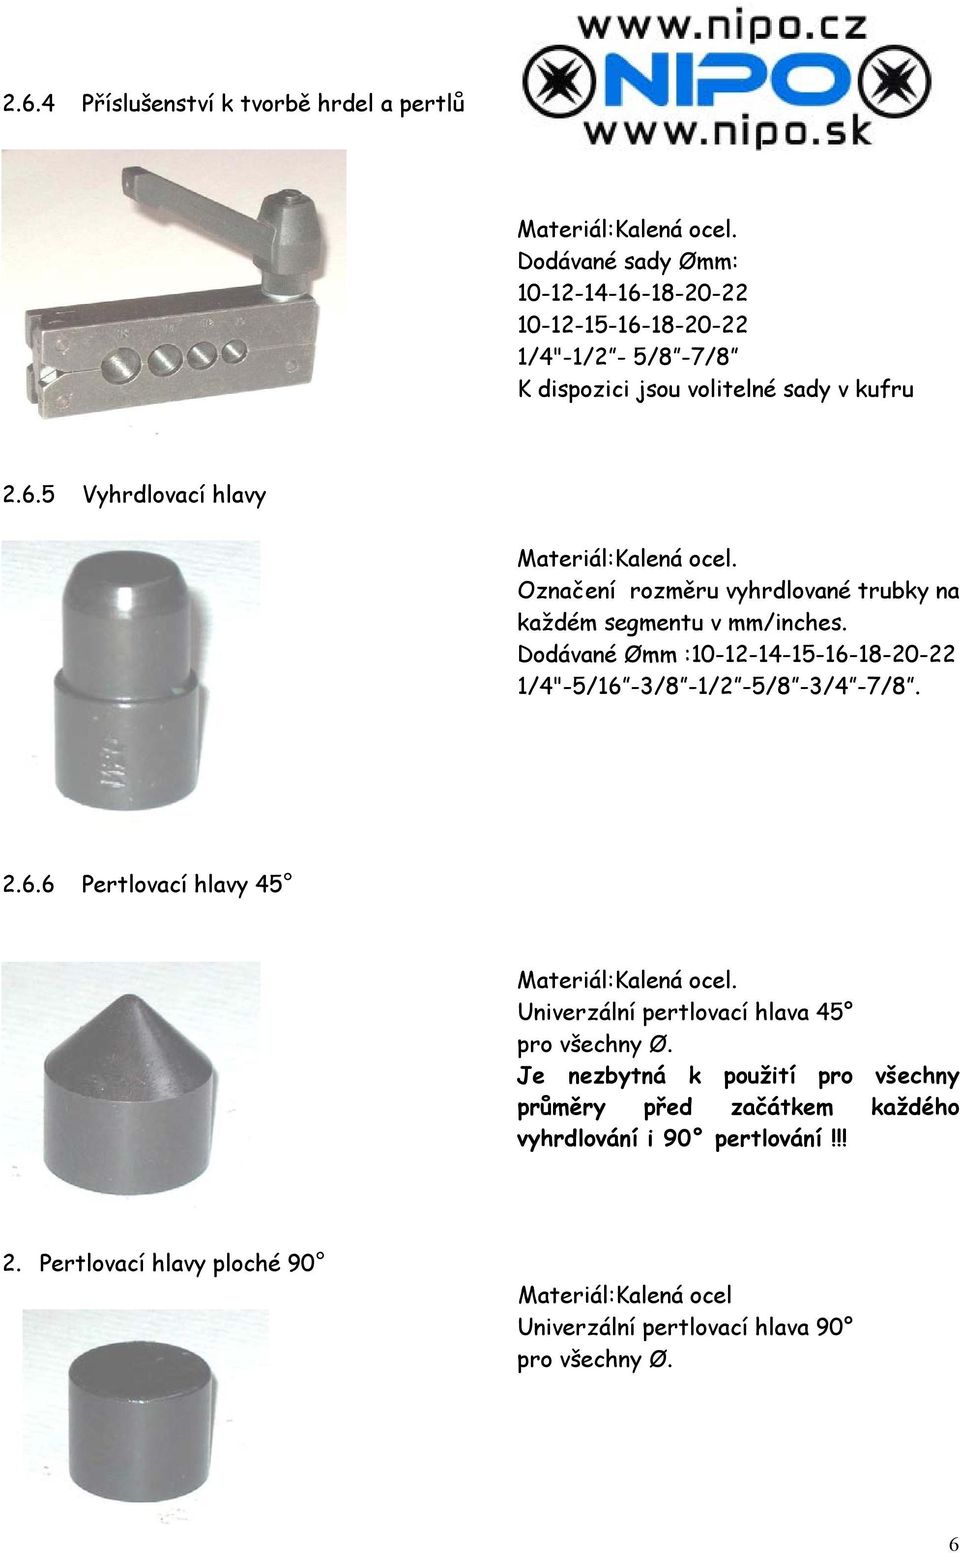 Označení rozměru vyhrdlované trubky na každém segmentu v mm/inches. Dodávané Ømm :10-12-14-15-16-18-20-22 1/4"-5/16-3/8-1/2-5/8-3/4-7/8. 2.6.6 Pertlovací hlavy 45 Materiál:Kalená ocel.